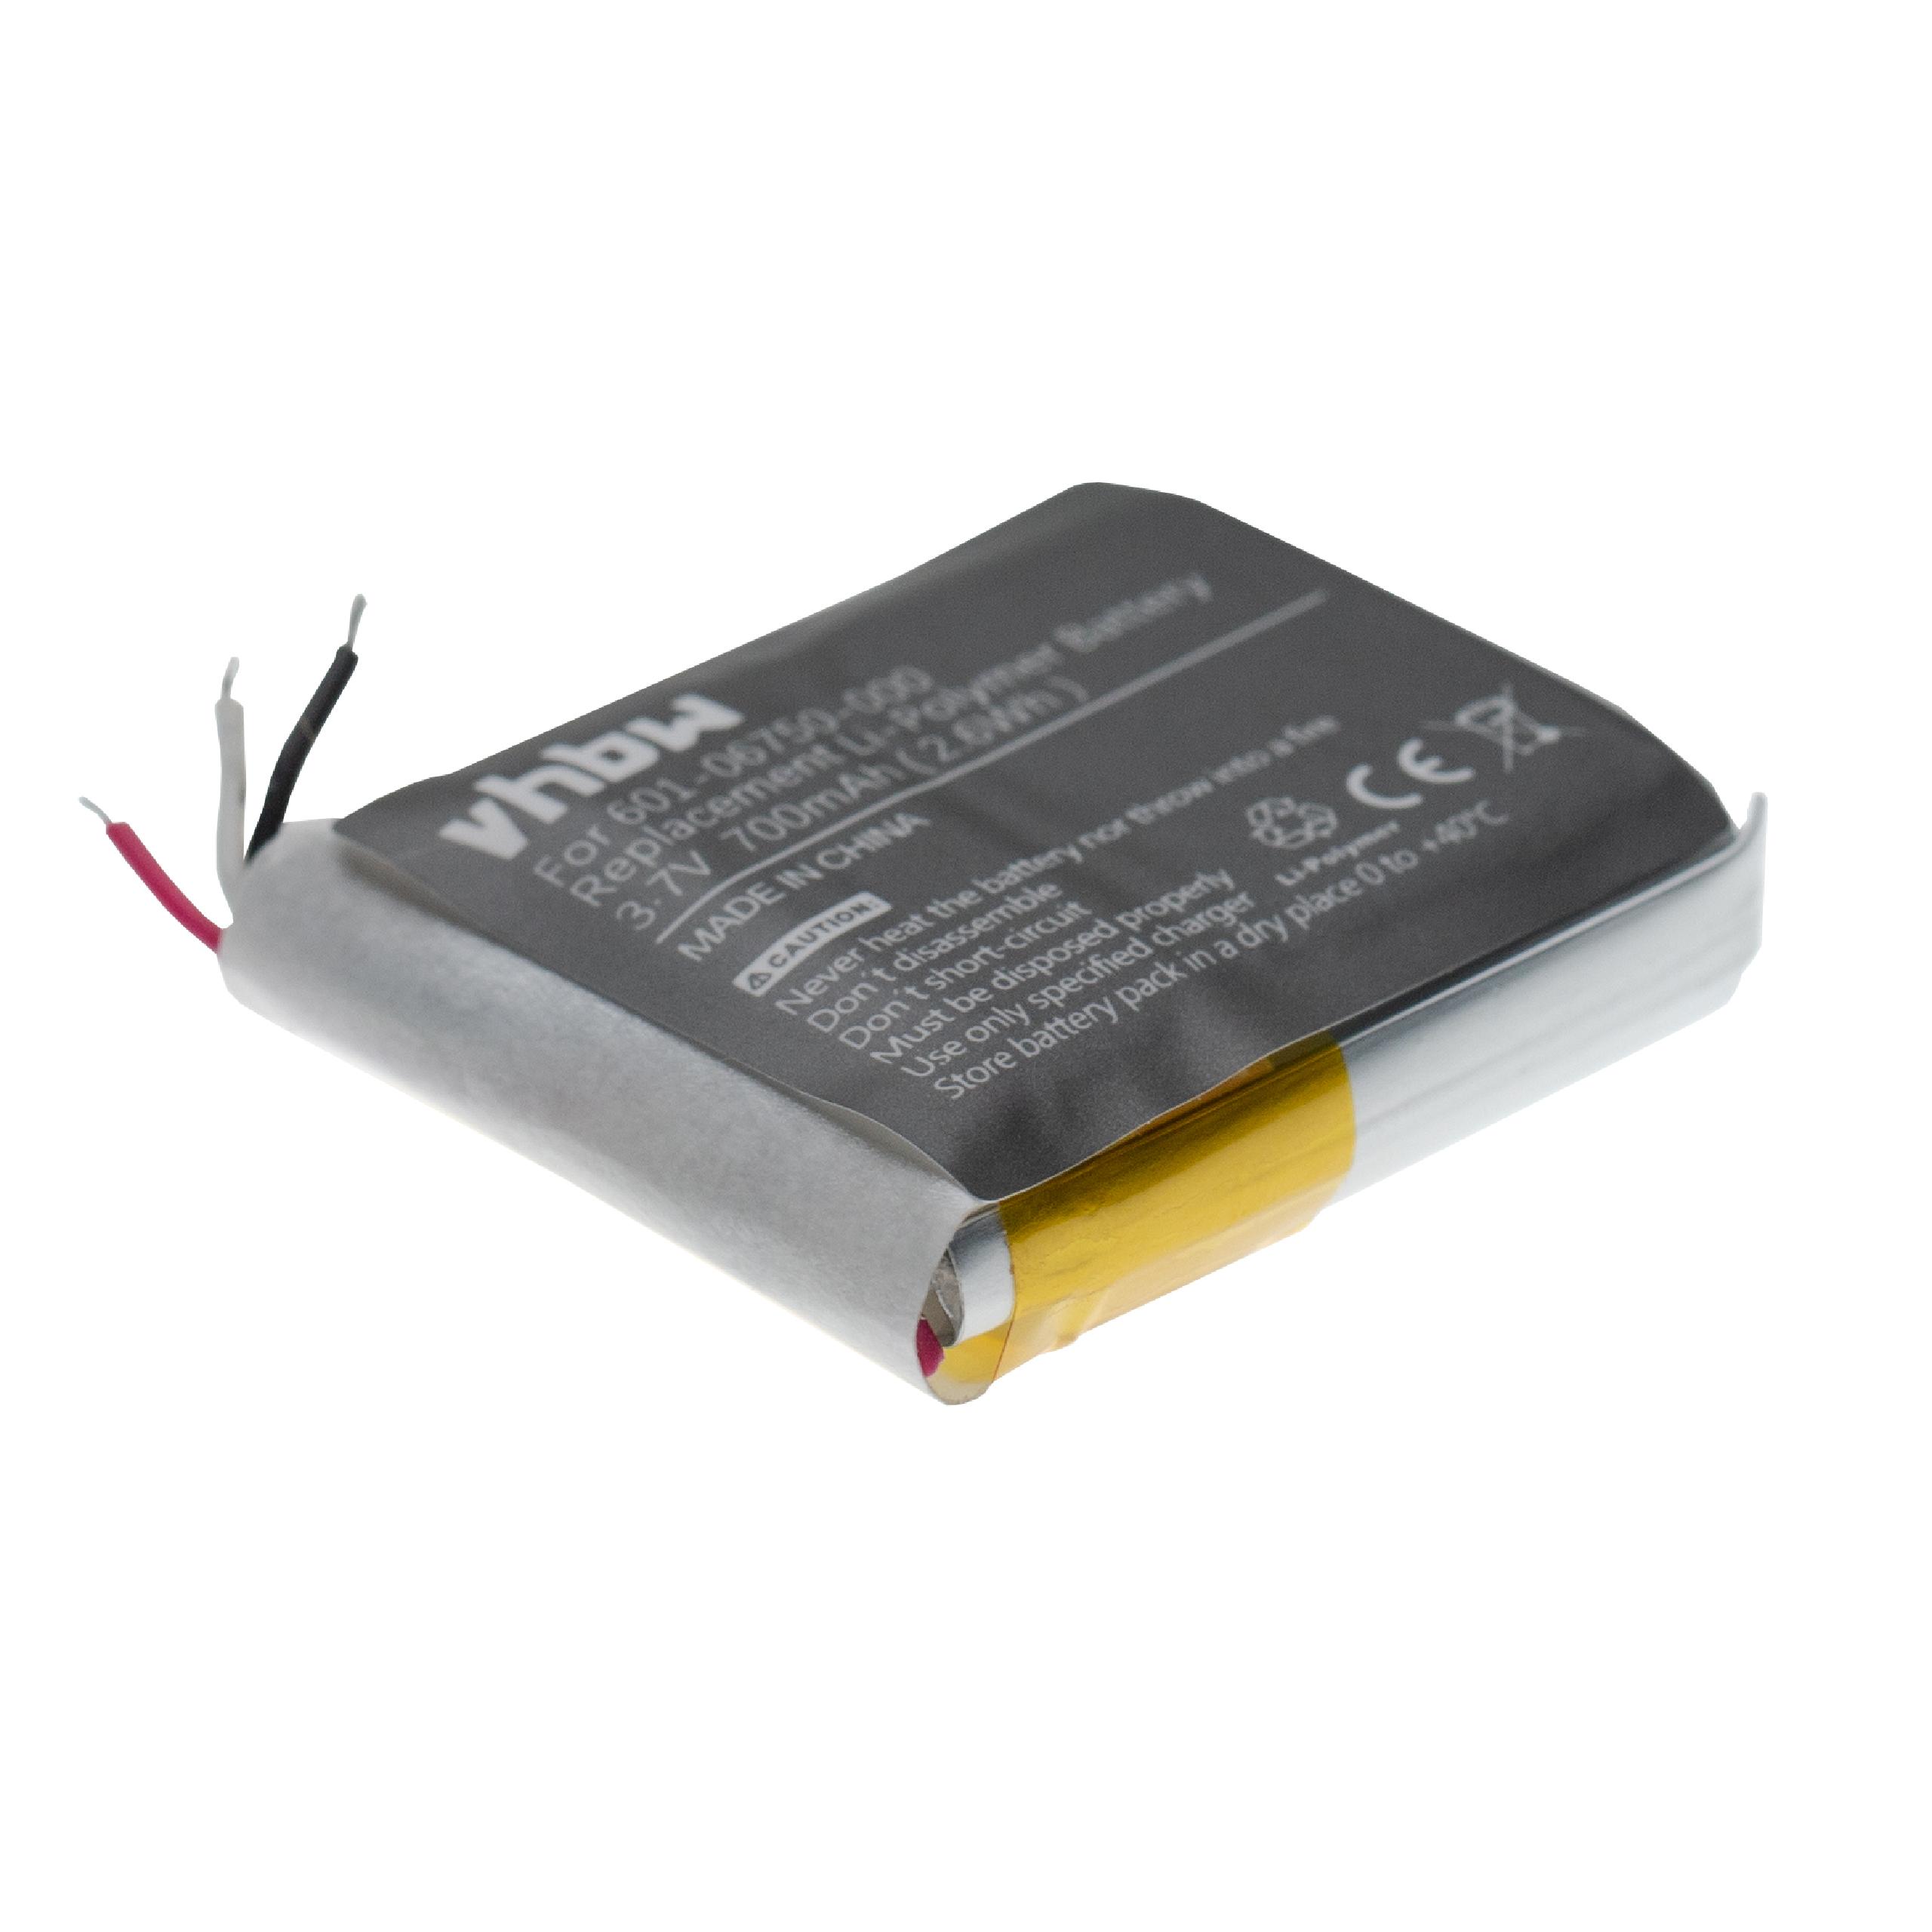 Batterie remplace GoPro 601-06750-000, 601-10257-000, 601-06750-101 pour caméscope - 700mAh 3,7V Li-polymère